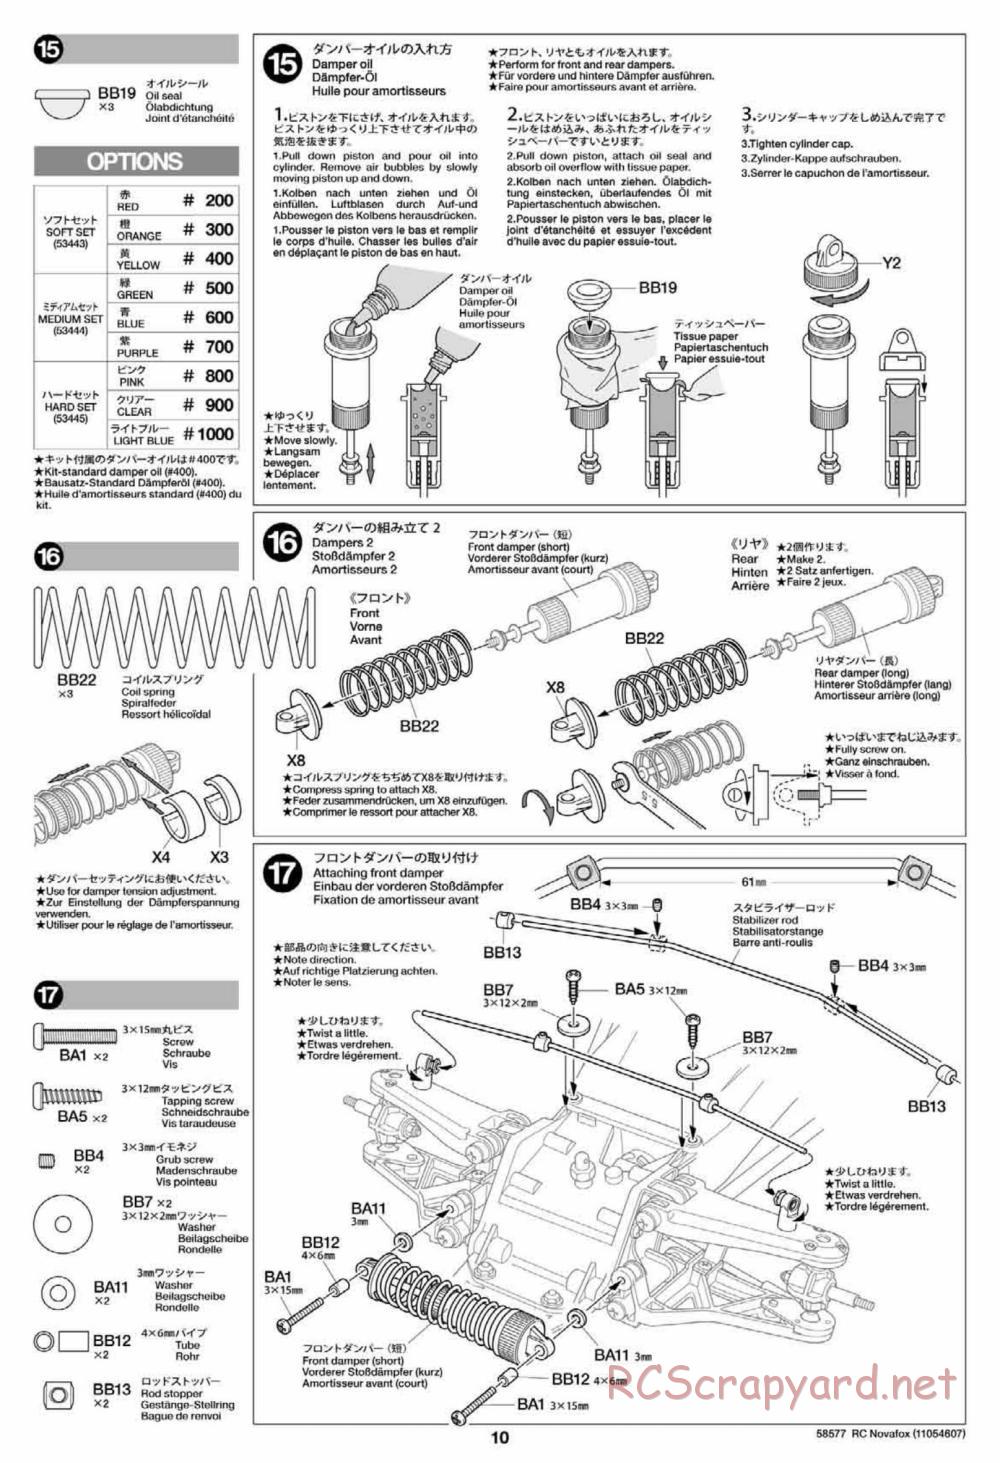 Tamiya - Novafox Chassis - Manual - Page 10